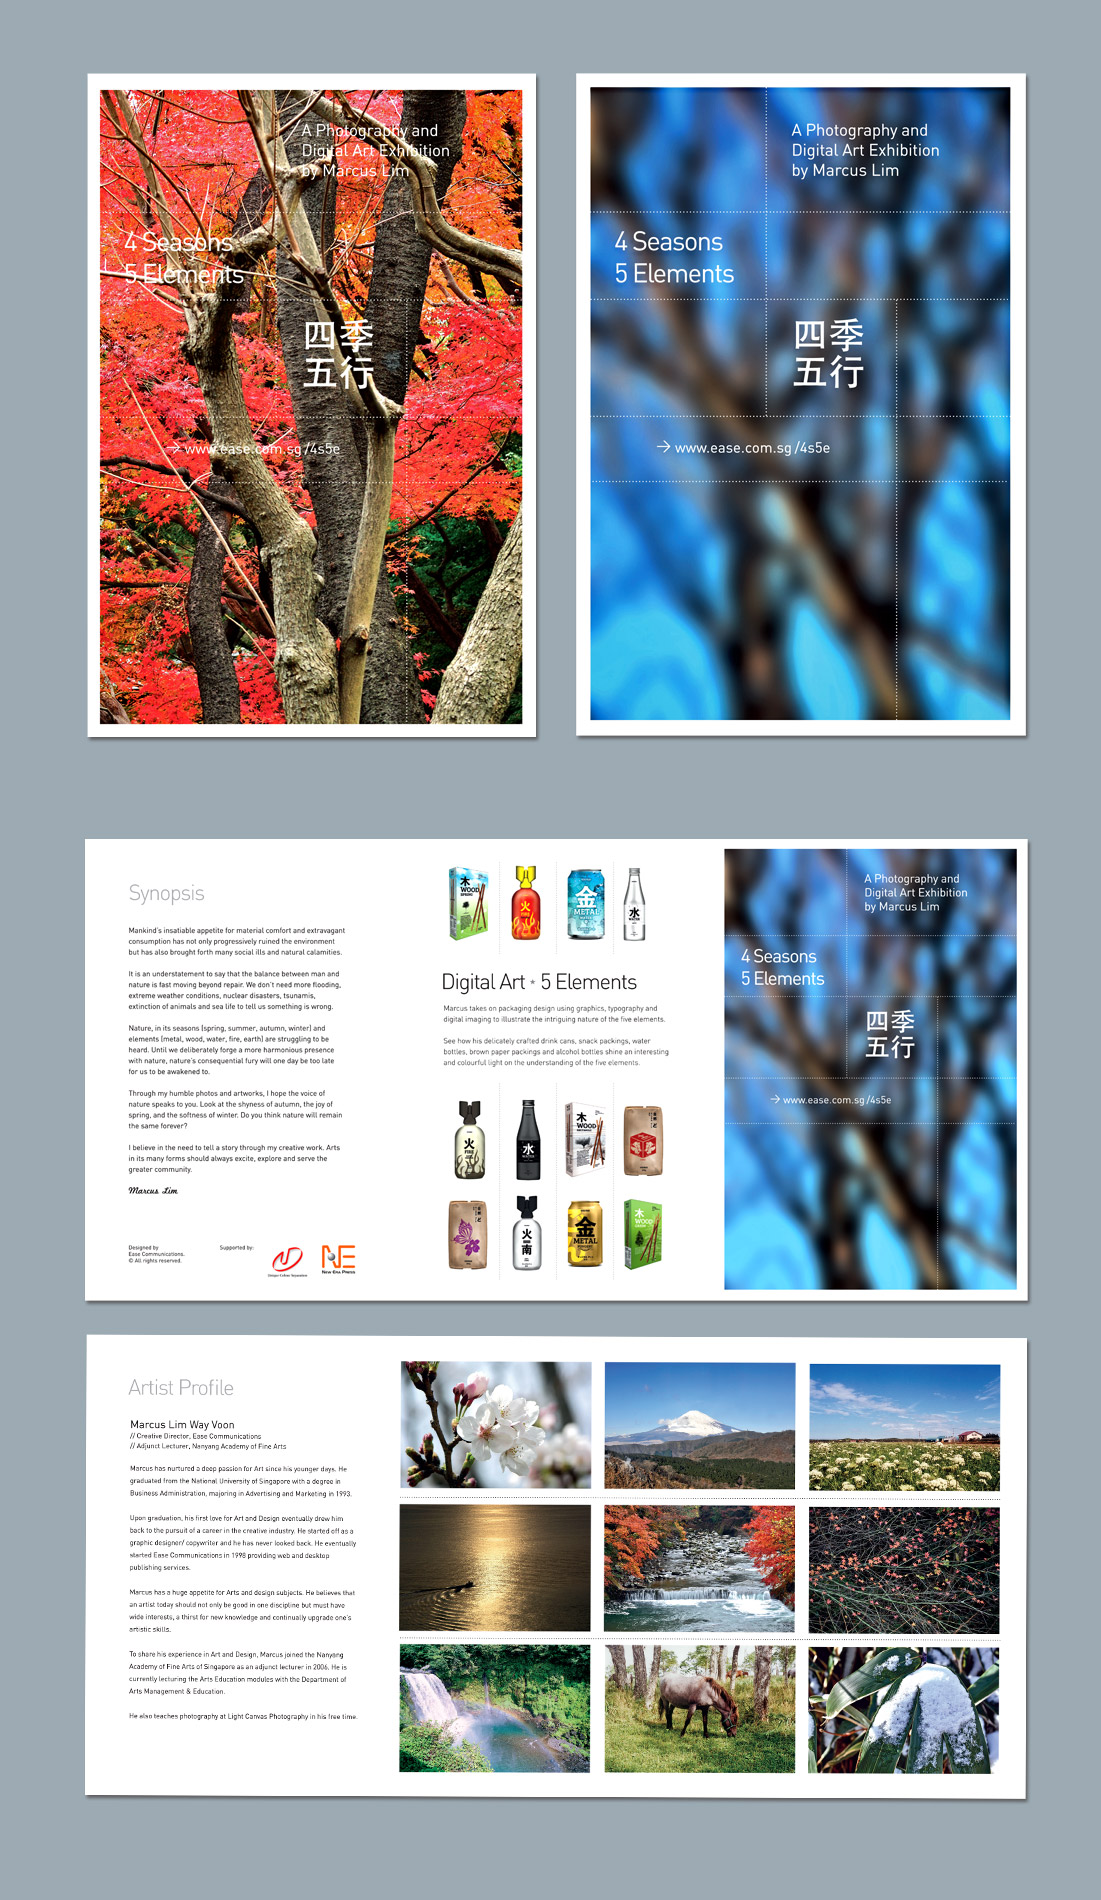 Brochure designs